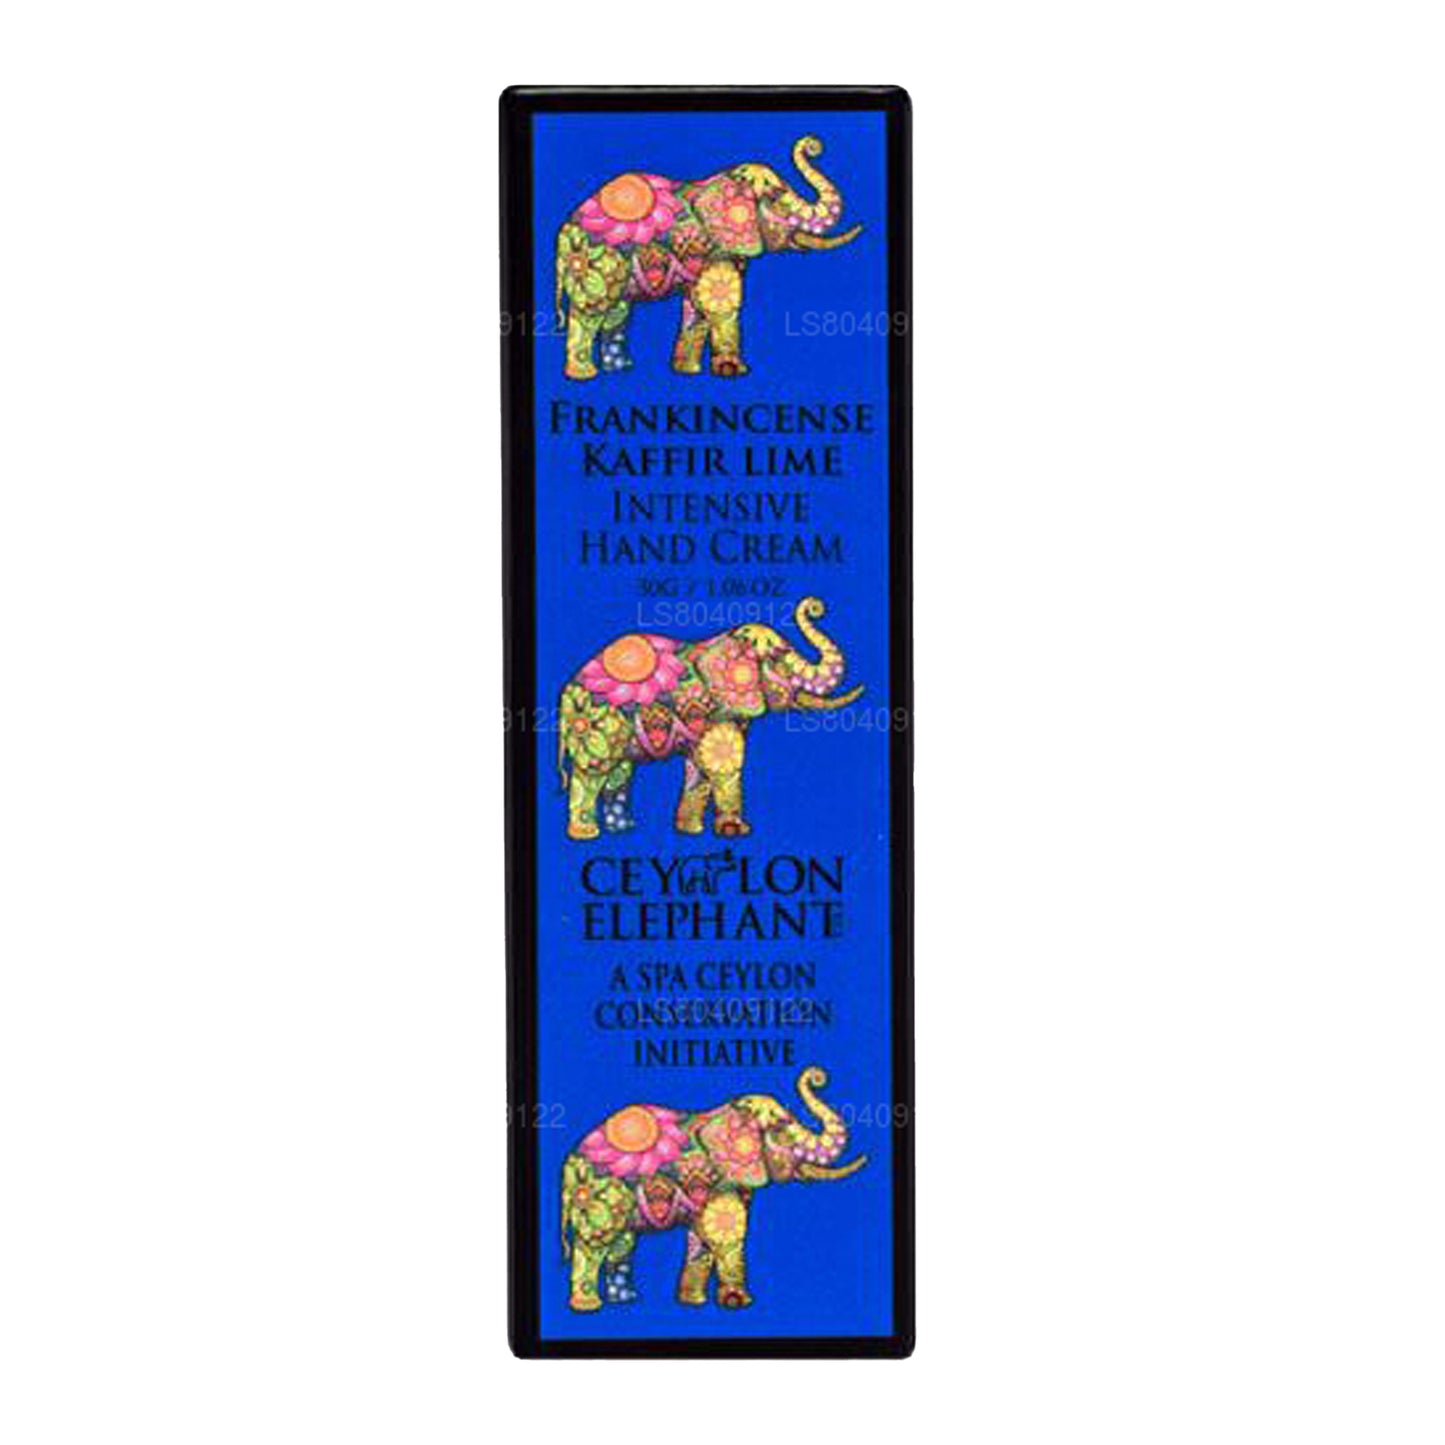 Интенсивный крем для рук Spa Ceylon Ceylon «Ладан со слоном и лаймом» (30 г)